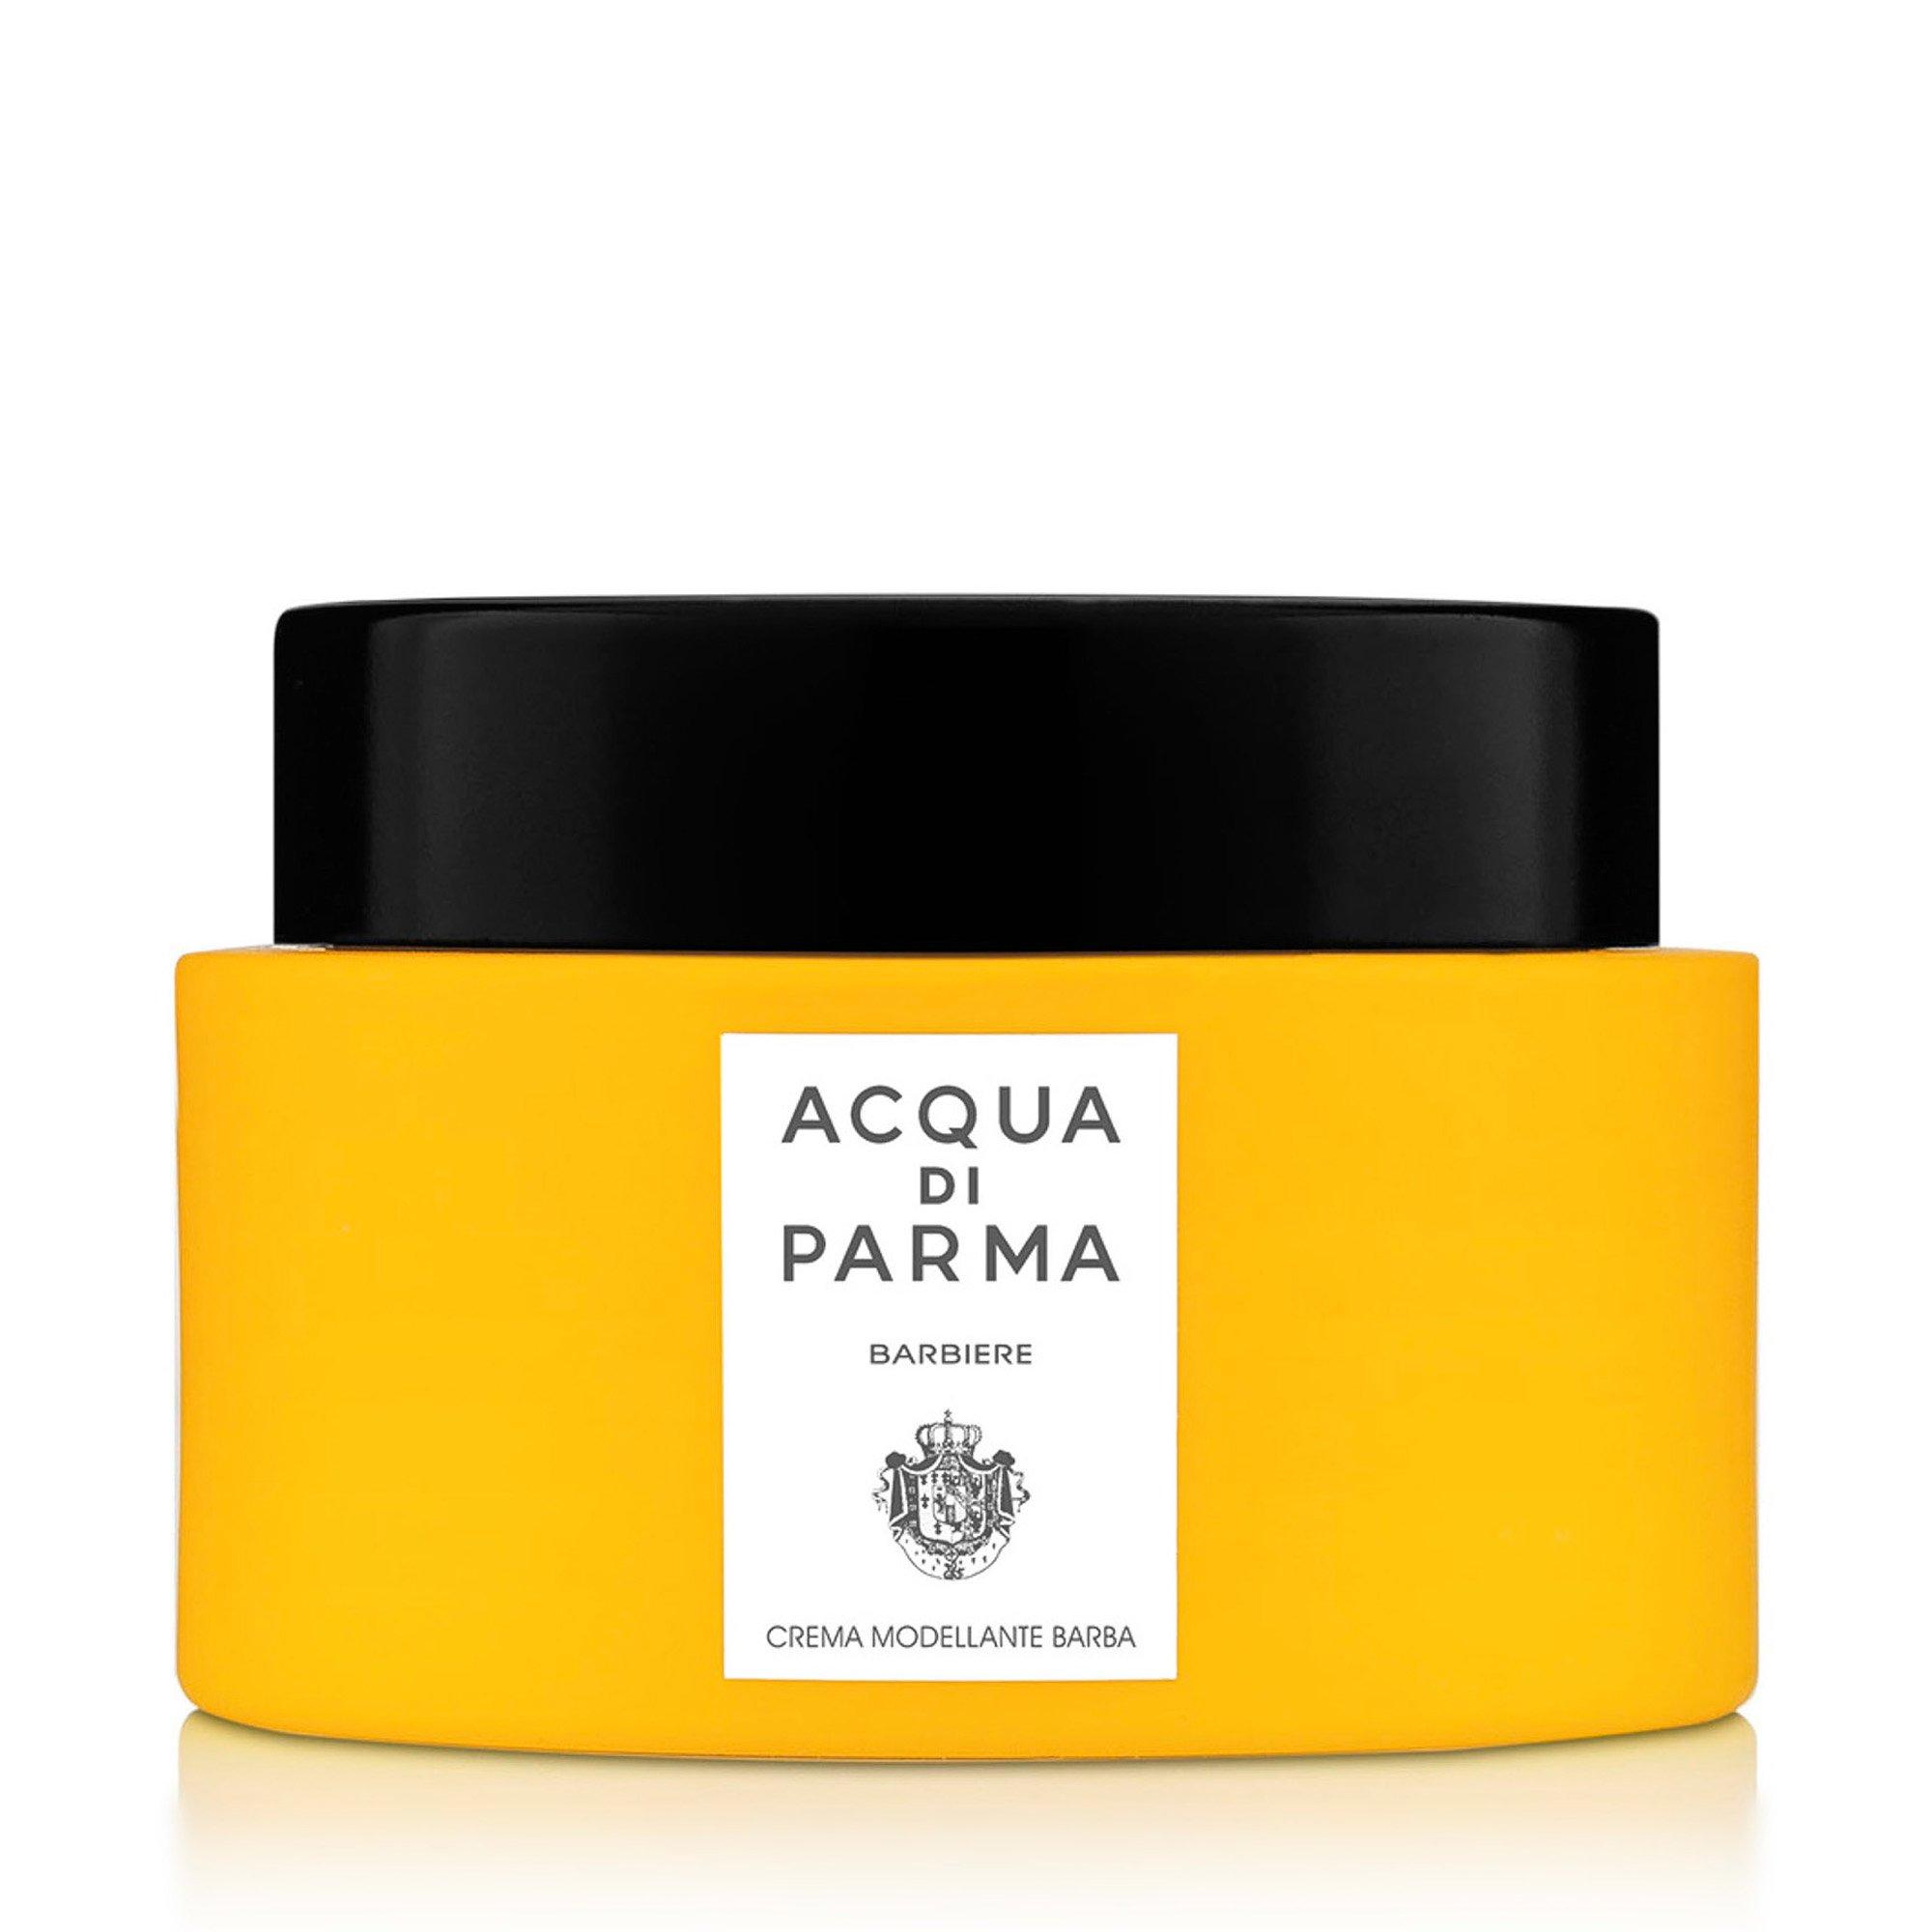 Image of ACQUA DI PARMA BARBIERE Barbiere Styling Cream - 50ml